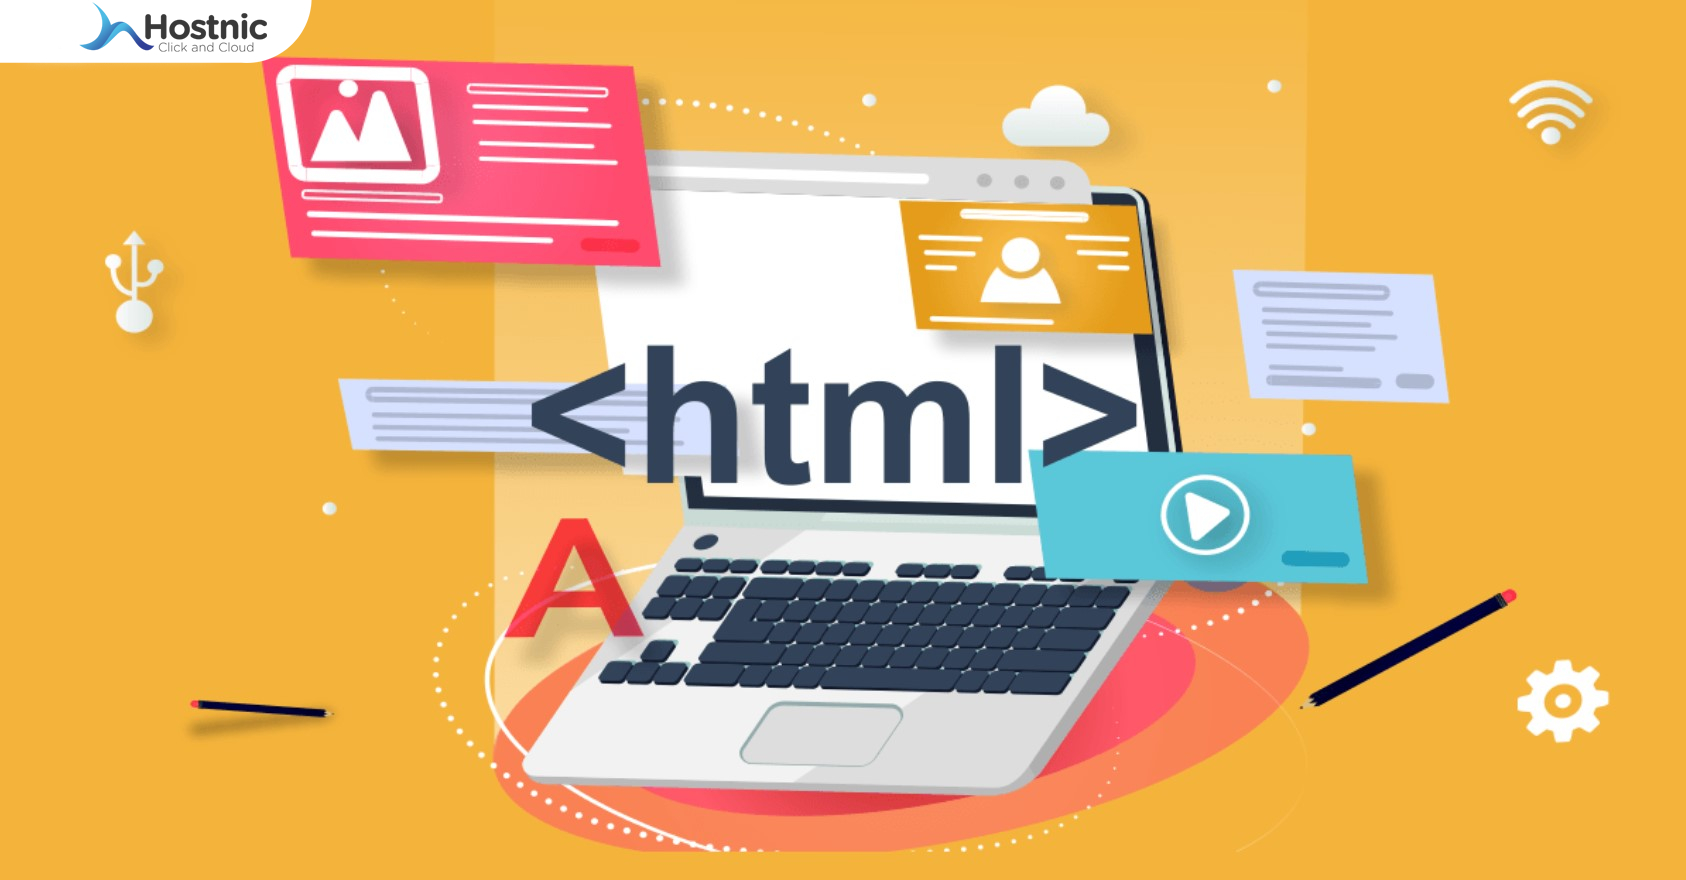 Contoh Coding HTML Website Berita: Informasi Yang Informatif